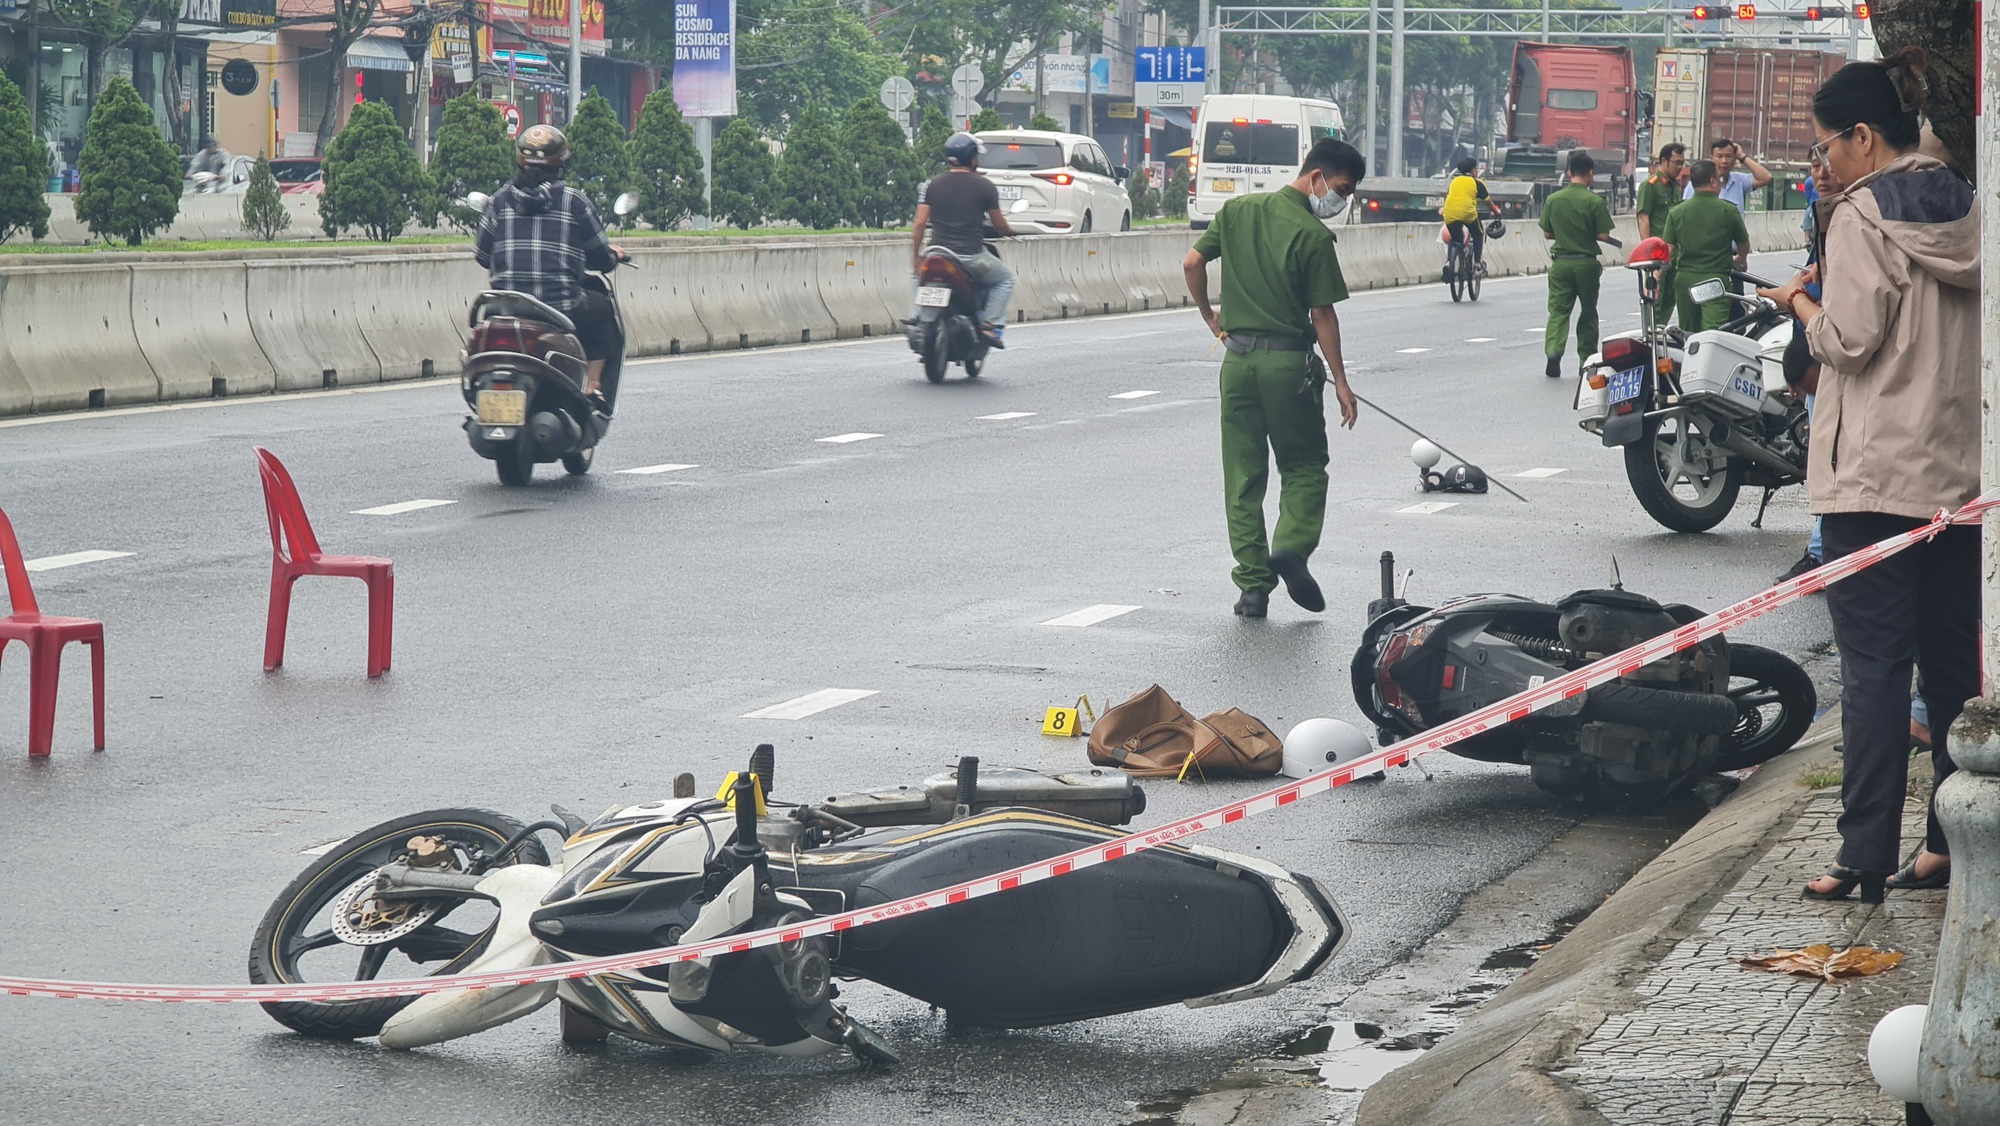 NÓNG: Cướp ngân hàng tại Đà Nẵng, 1 bảo vệ bị thương rất nặng - Ảnh 3.